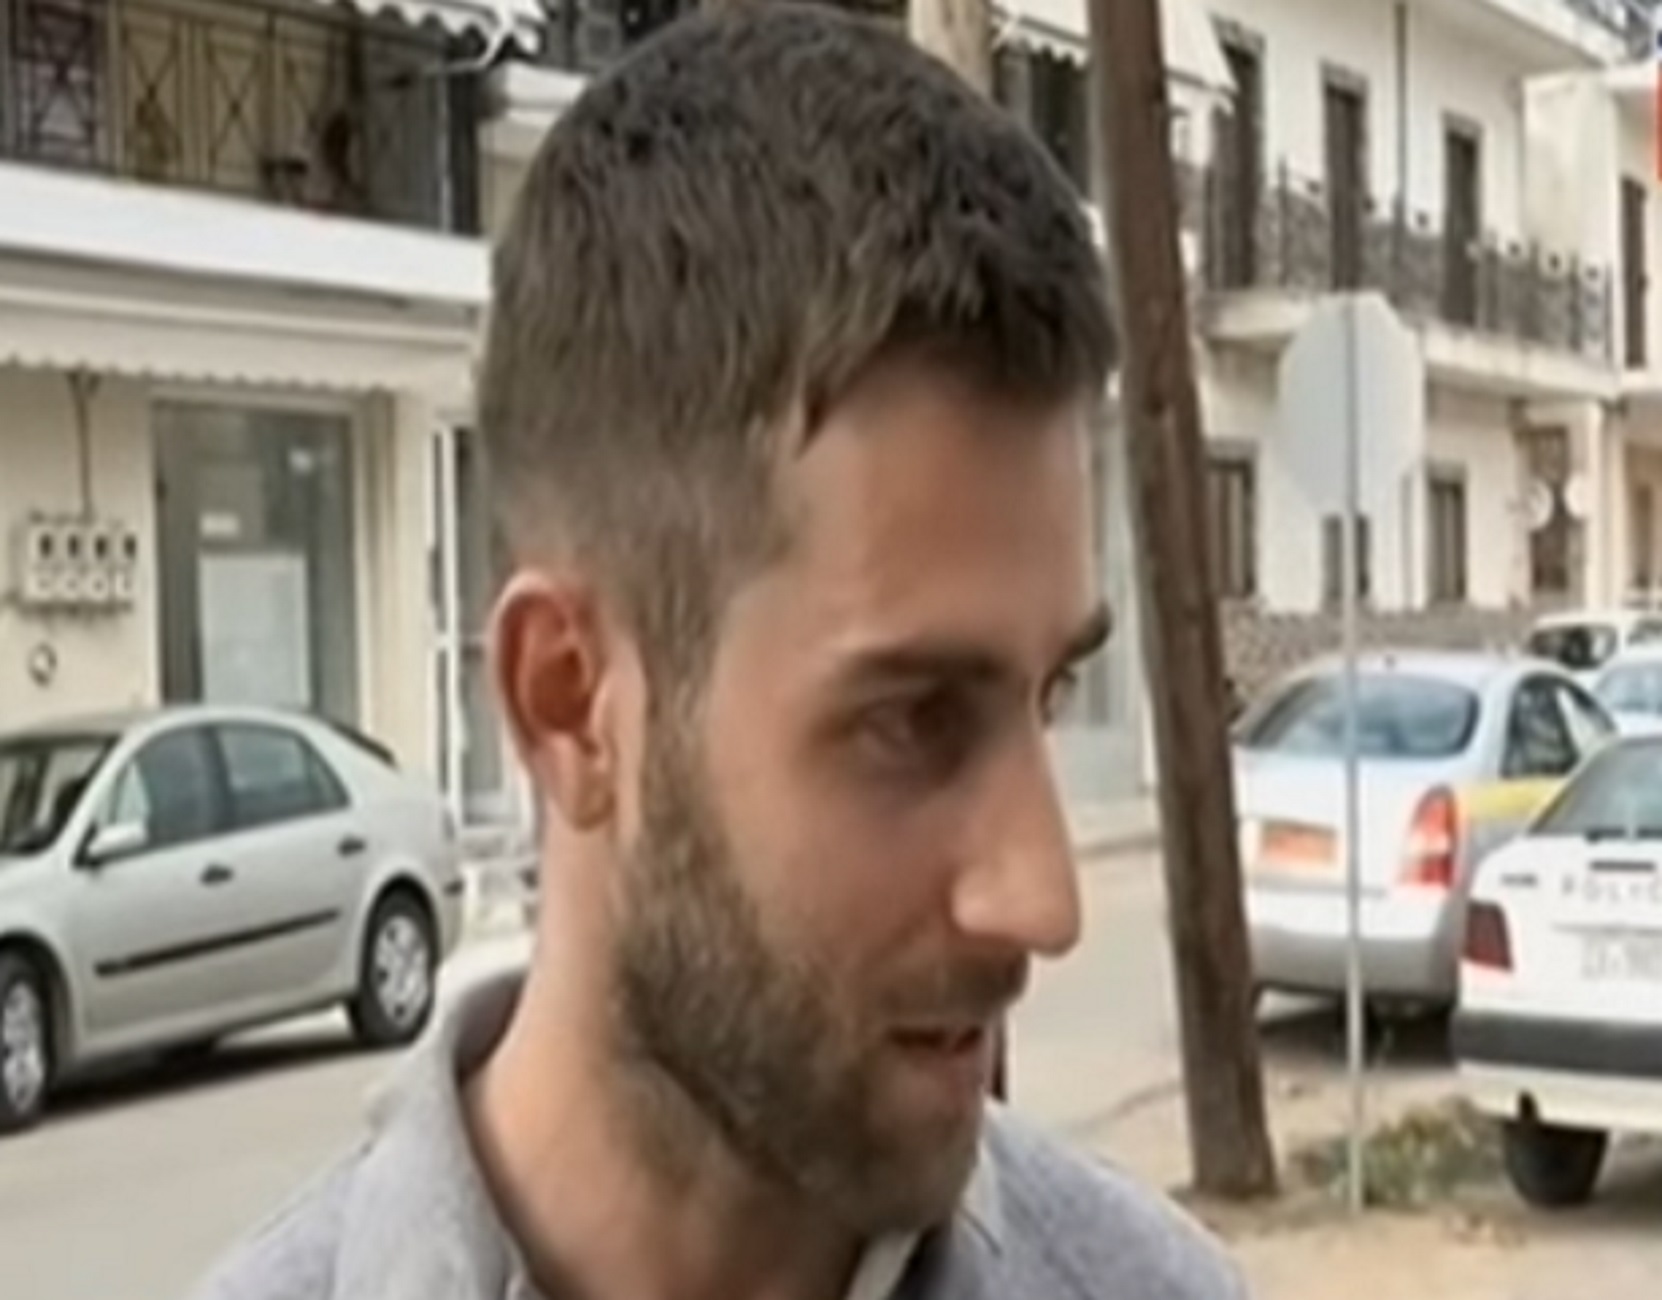 Ζάκυνθος: Ο πατροκτόνος για πρώτη φορά στην κάμερα – “Η ζωή μου καταστράφηκε τη μέρα που γεννήθηκα” – video